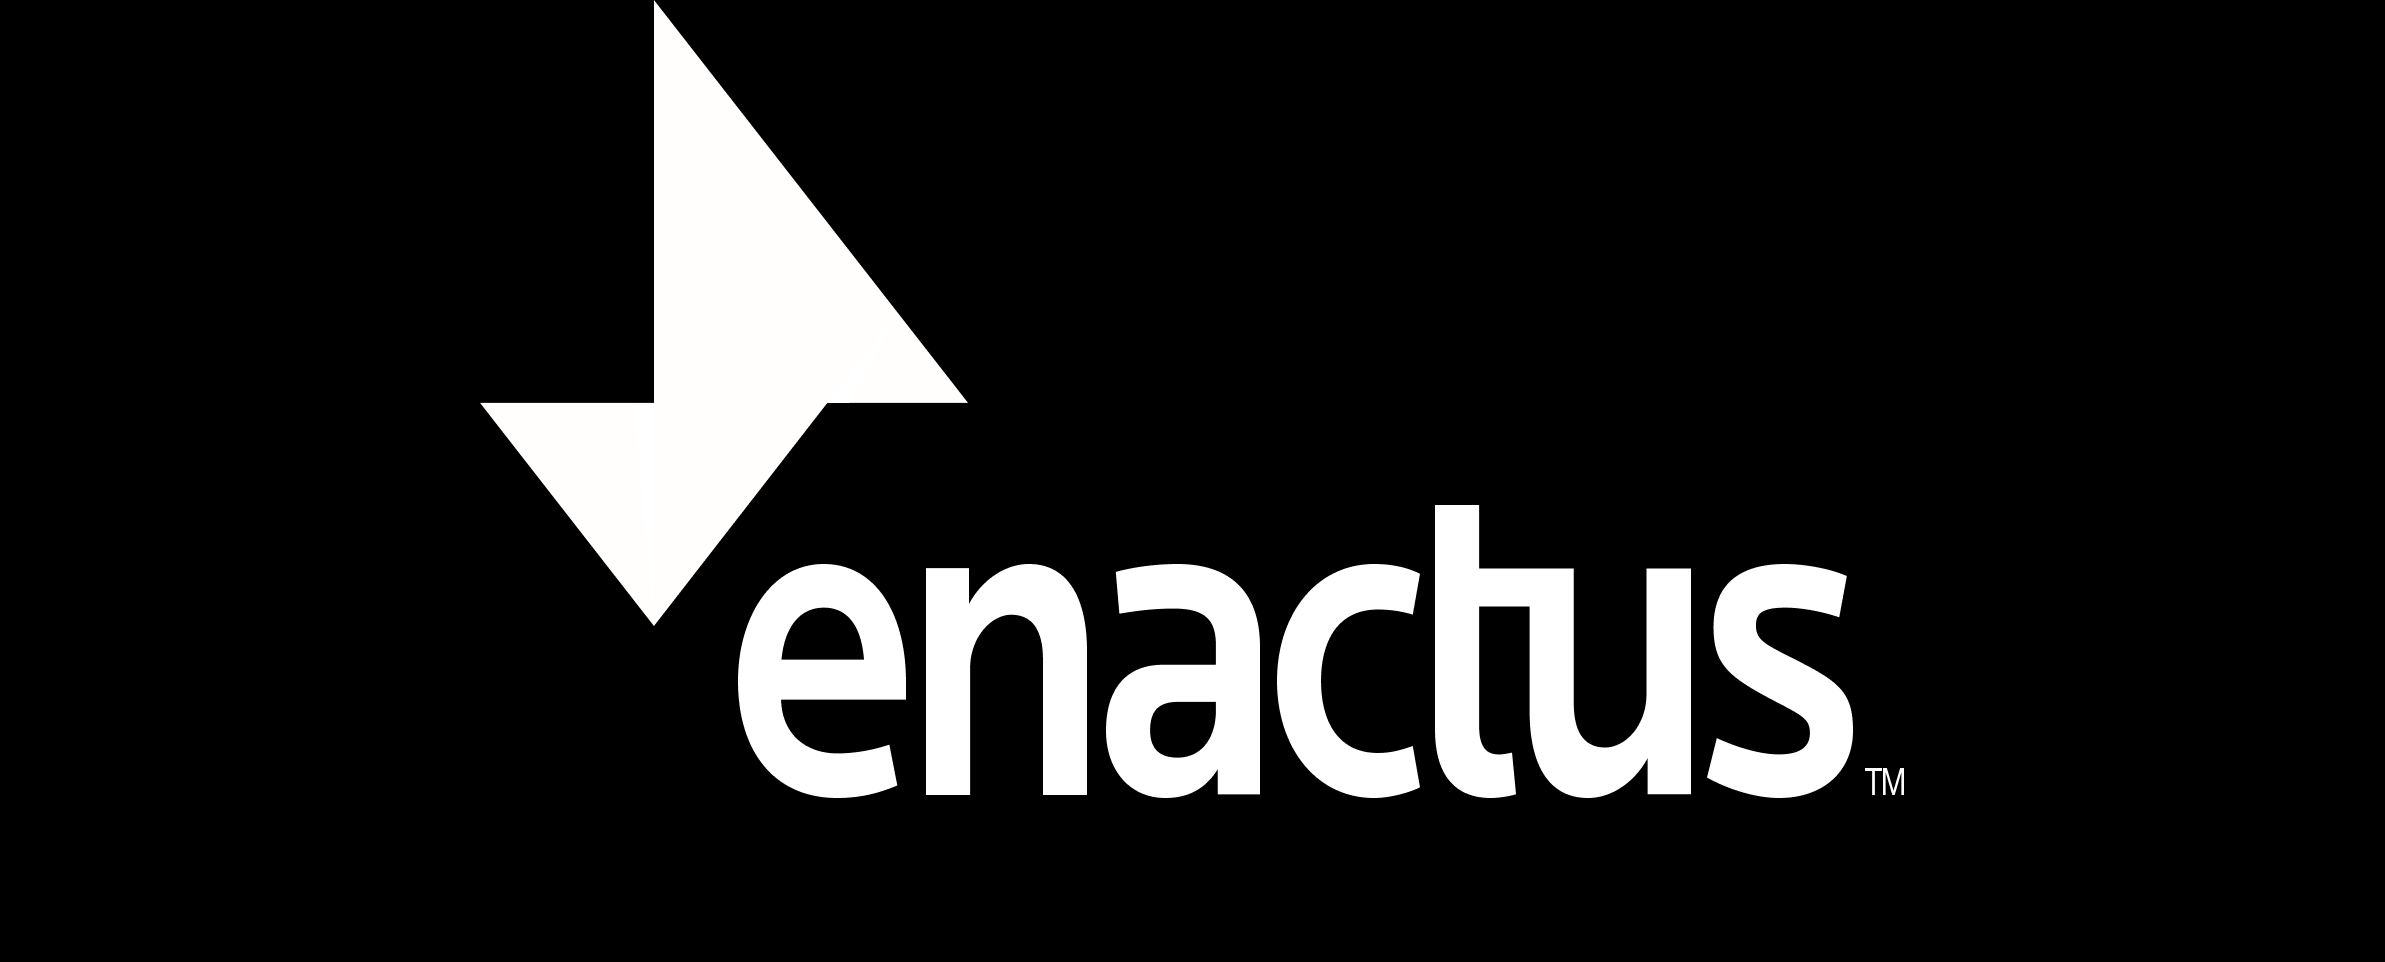 Enactus